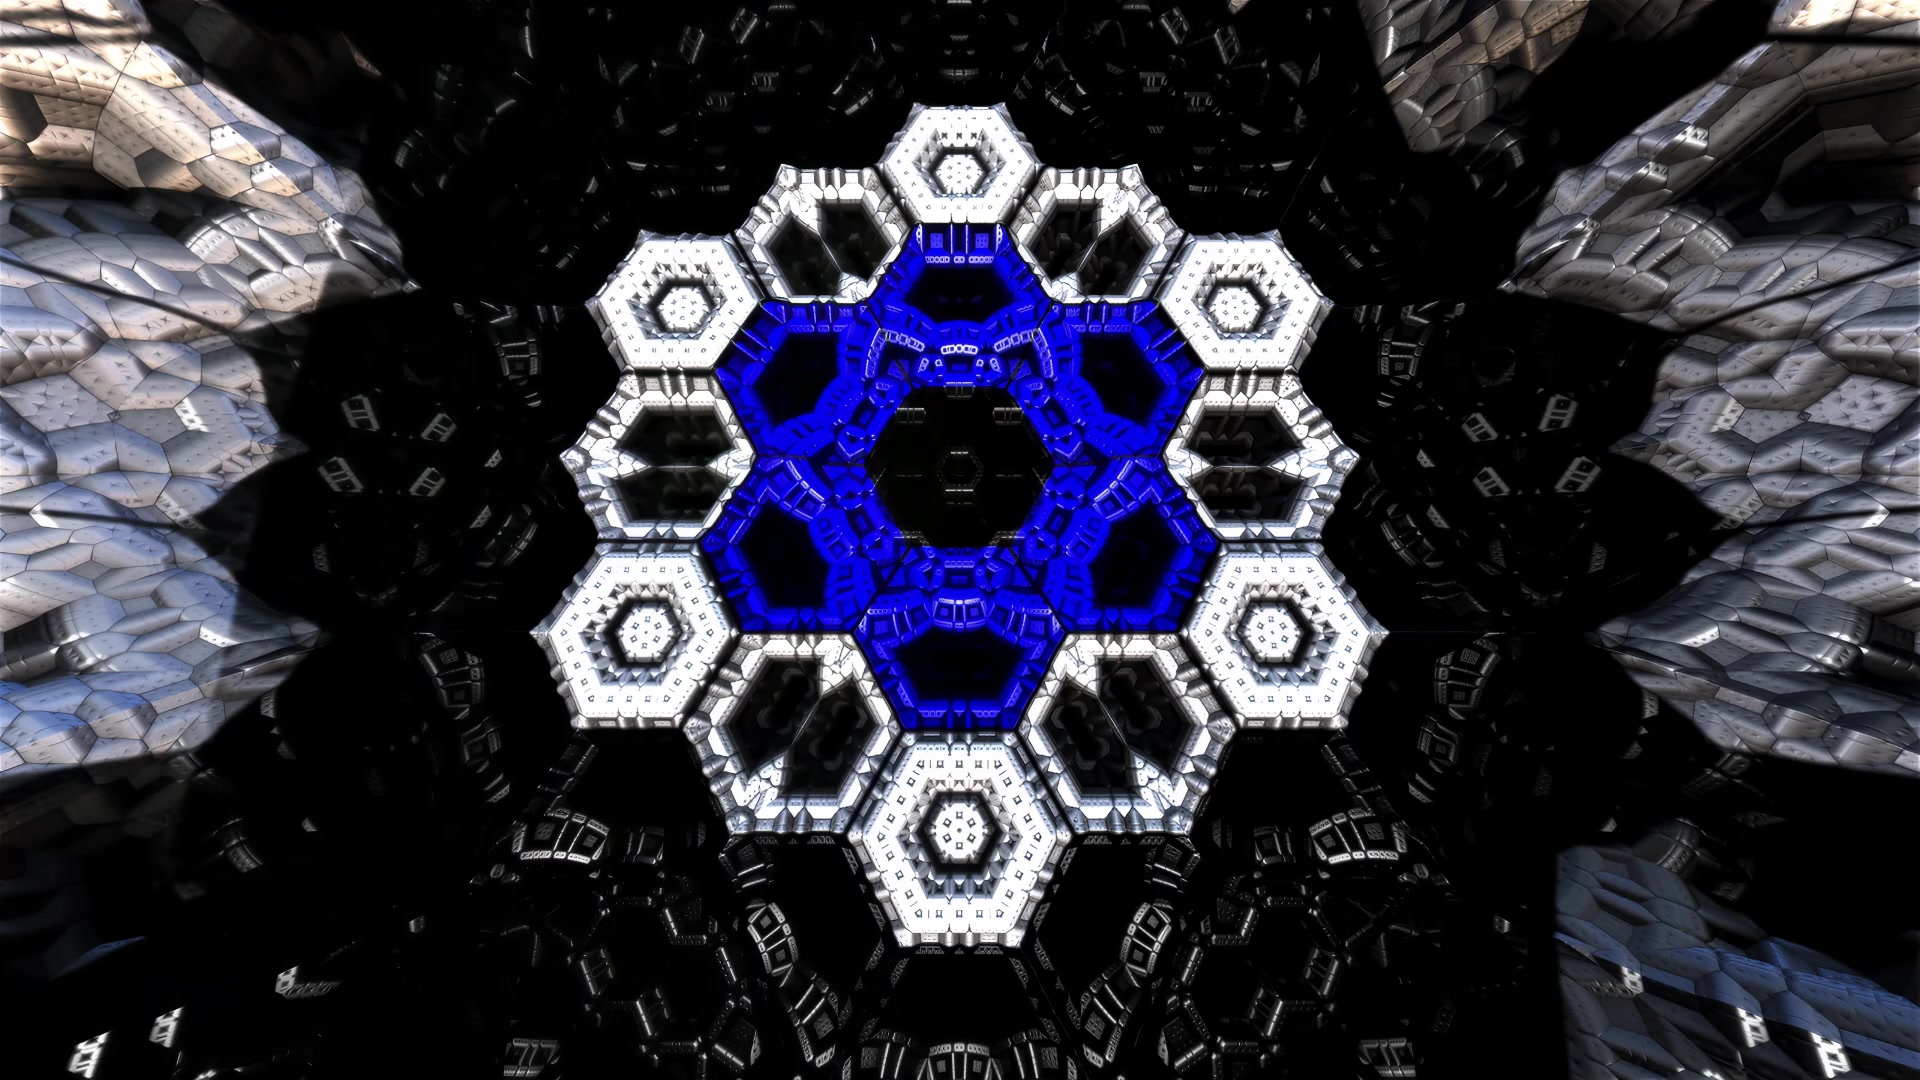 Structural Resonance - Hexagon Mirror Array #10